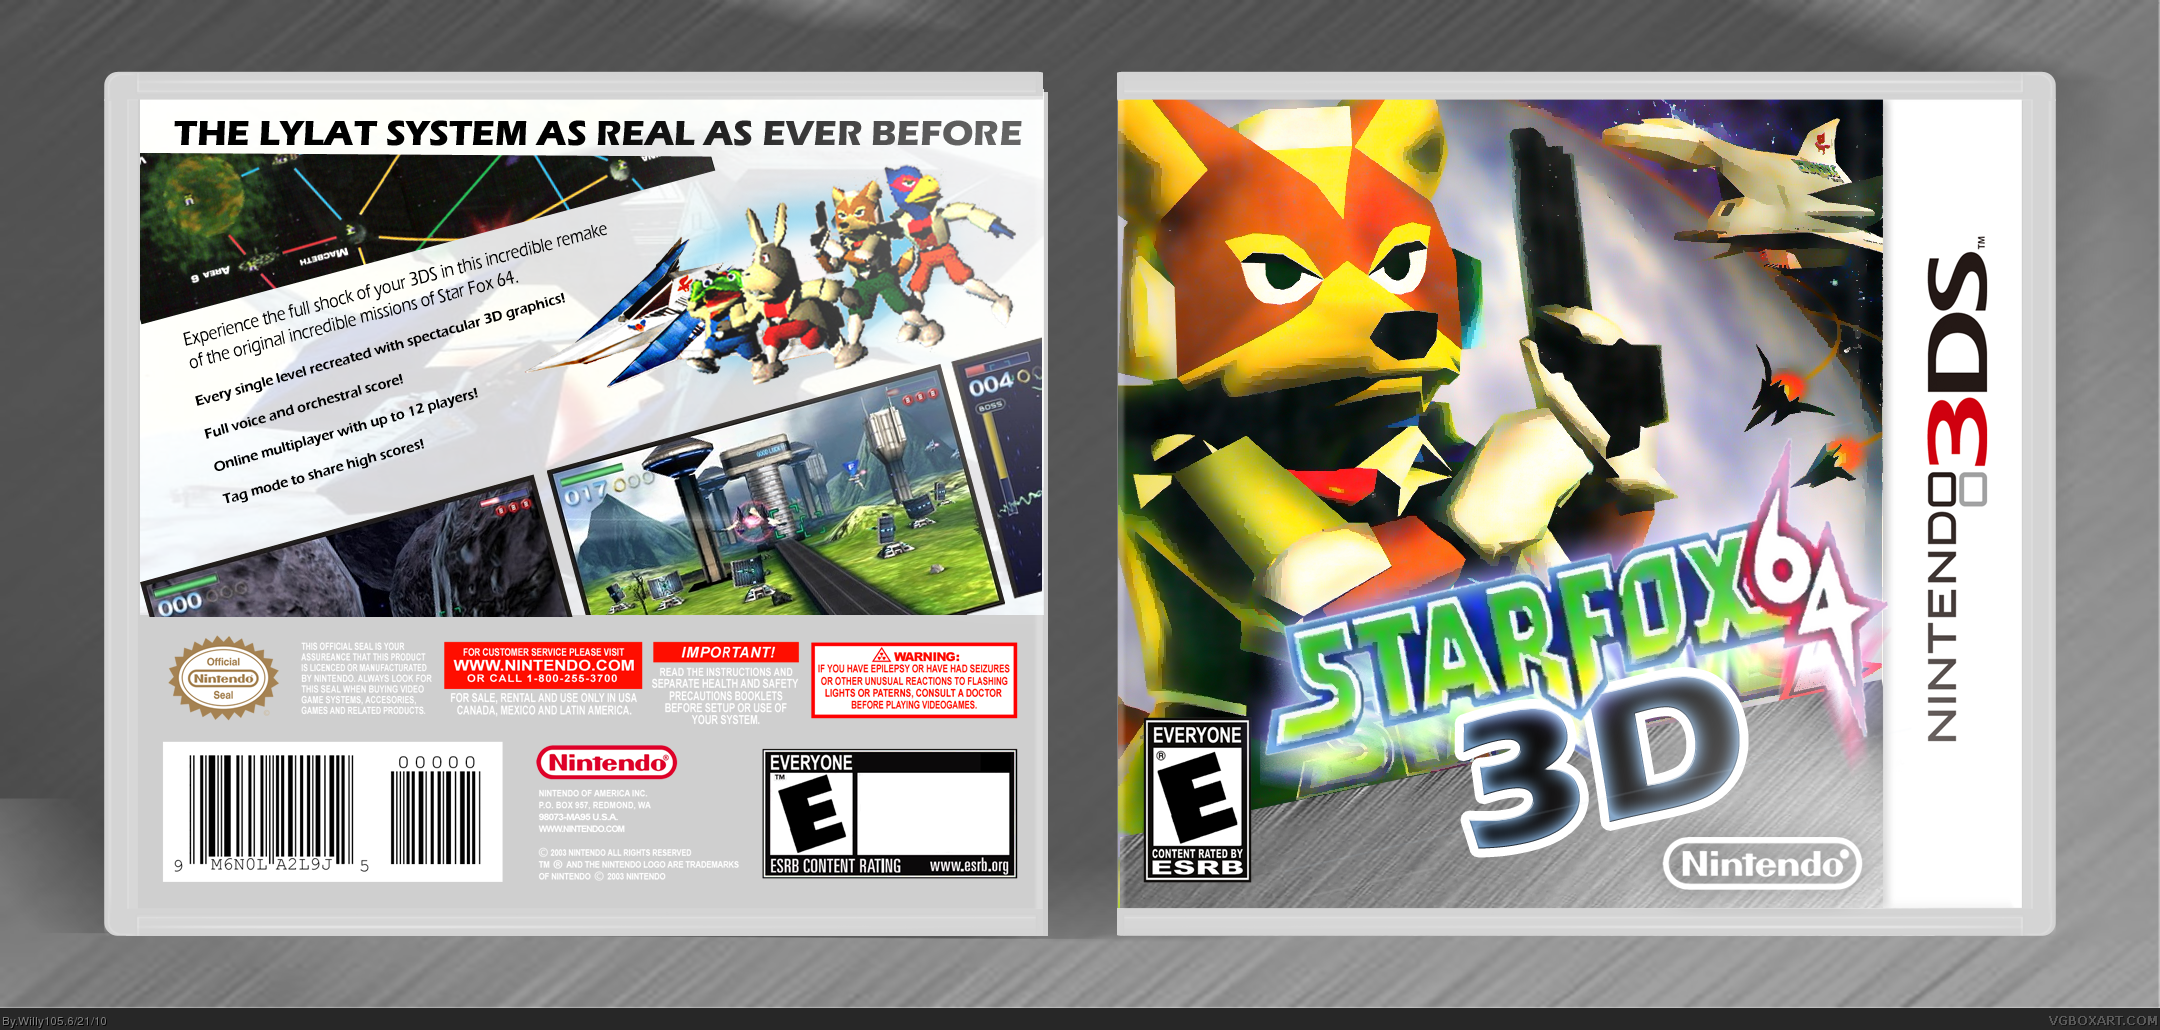 Star Fox 64 3D box cover